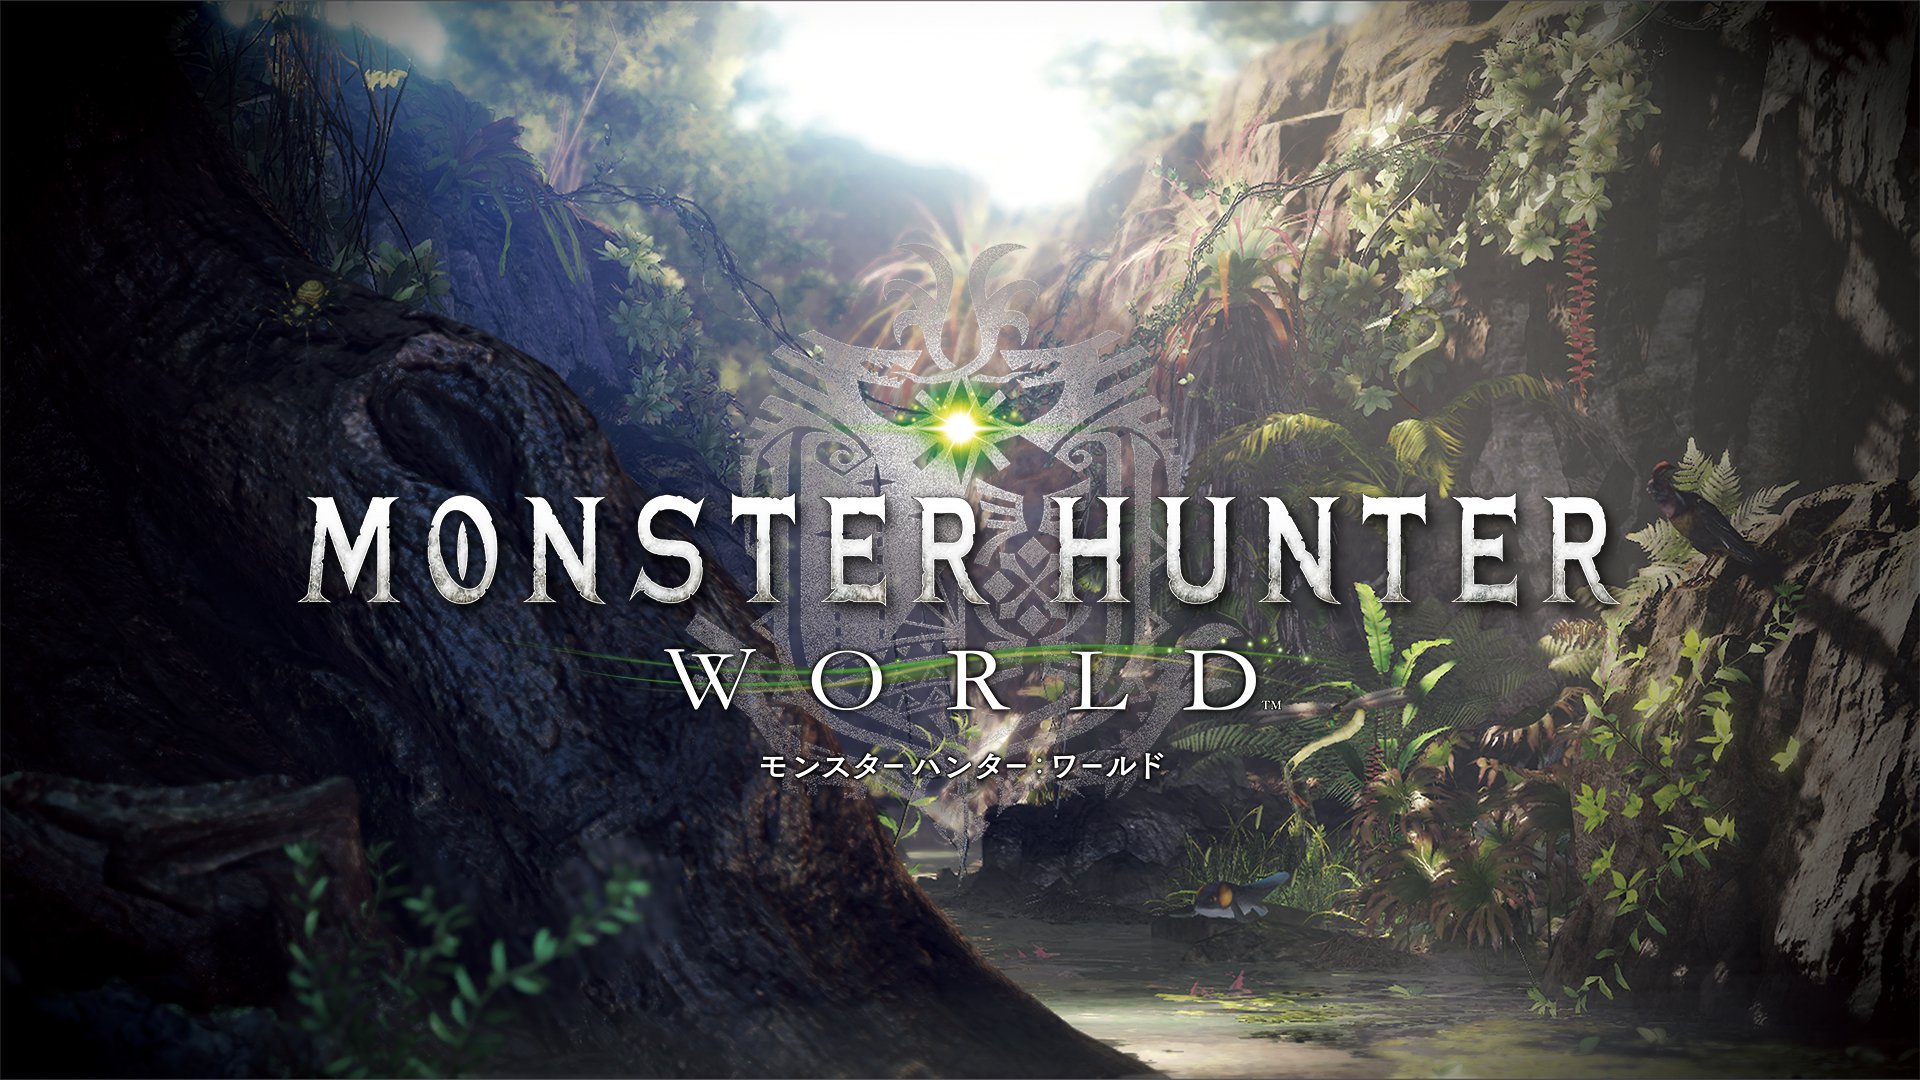 ট ইট র モンハン部 速報 Monster Hunter World モンスターハンター ワールド 18年初頭 Playstation 4にて発売決定 新たな生命の地 狩れ 本能のままに T Co 3h0k4qlmxv Mhworld モンハンワールド T Co Yzb6rqs1ii